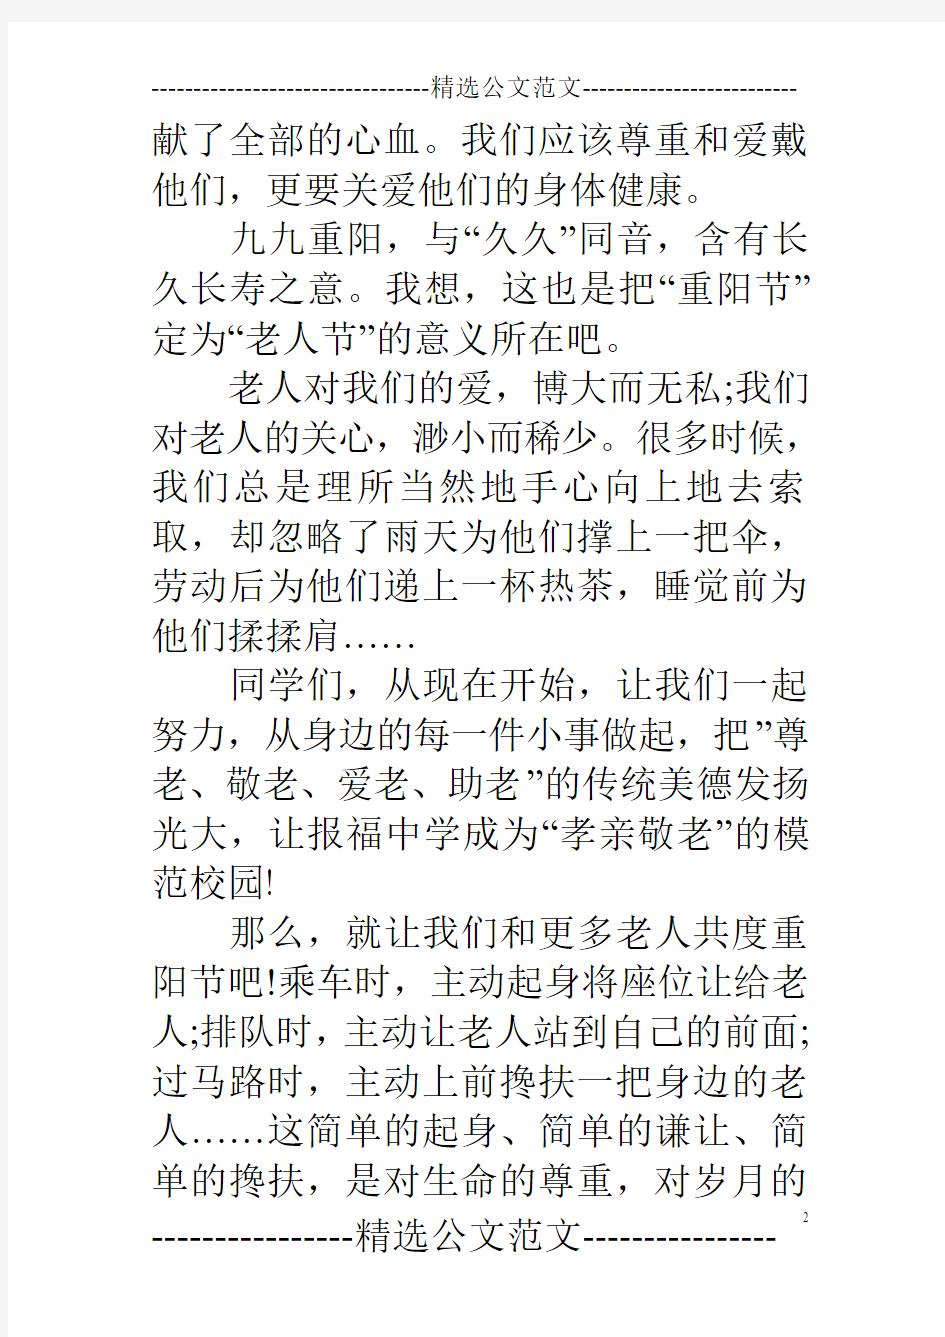 2014重阳节作文：尊老、敬老、爱老的节日 